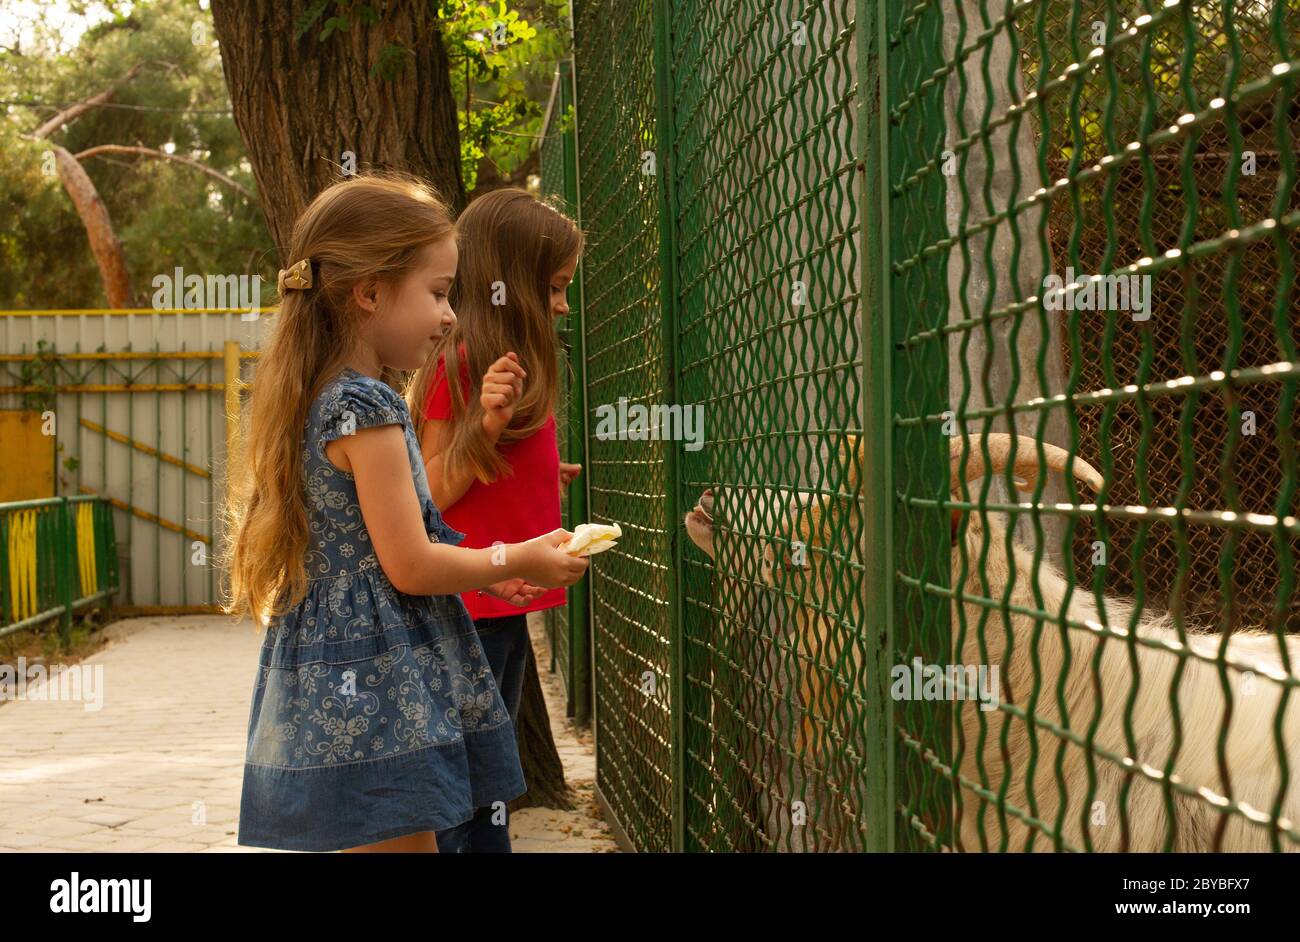 Bloody brazil teen zoo. Две девочки в зоопарке. Девочка в зоопарке. Картинка двух девочек в зоопарк. Две девочки в зоопарке картинка для детей.